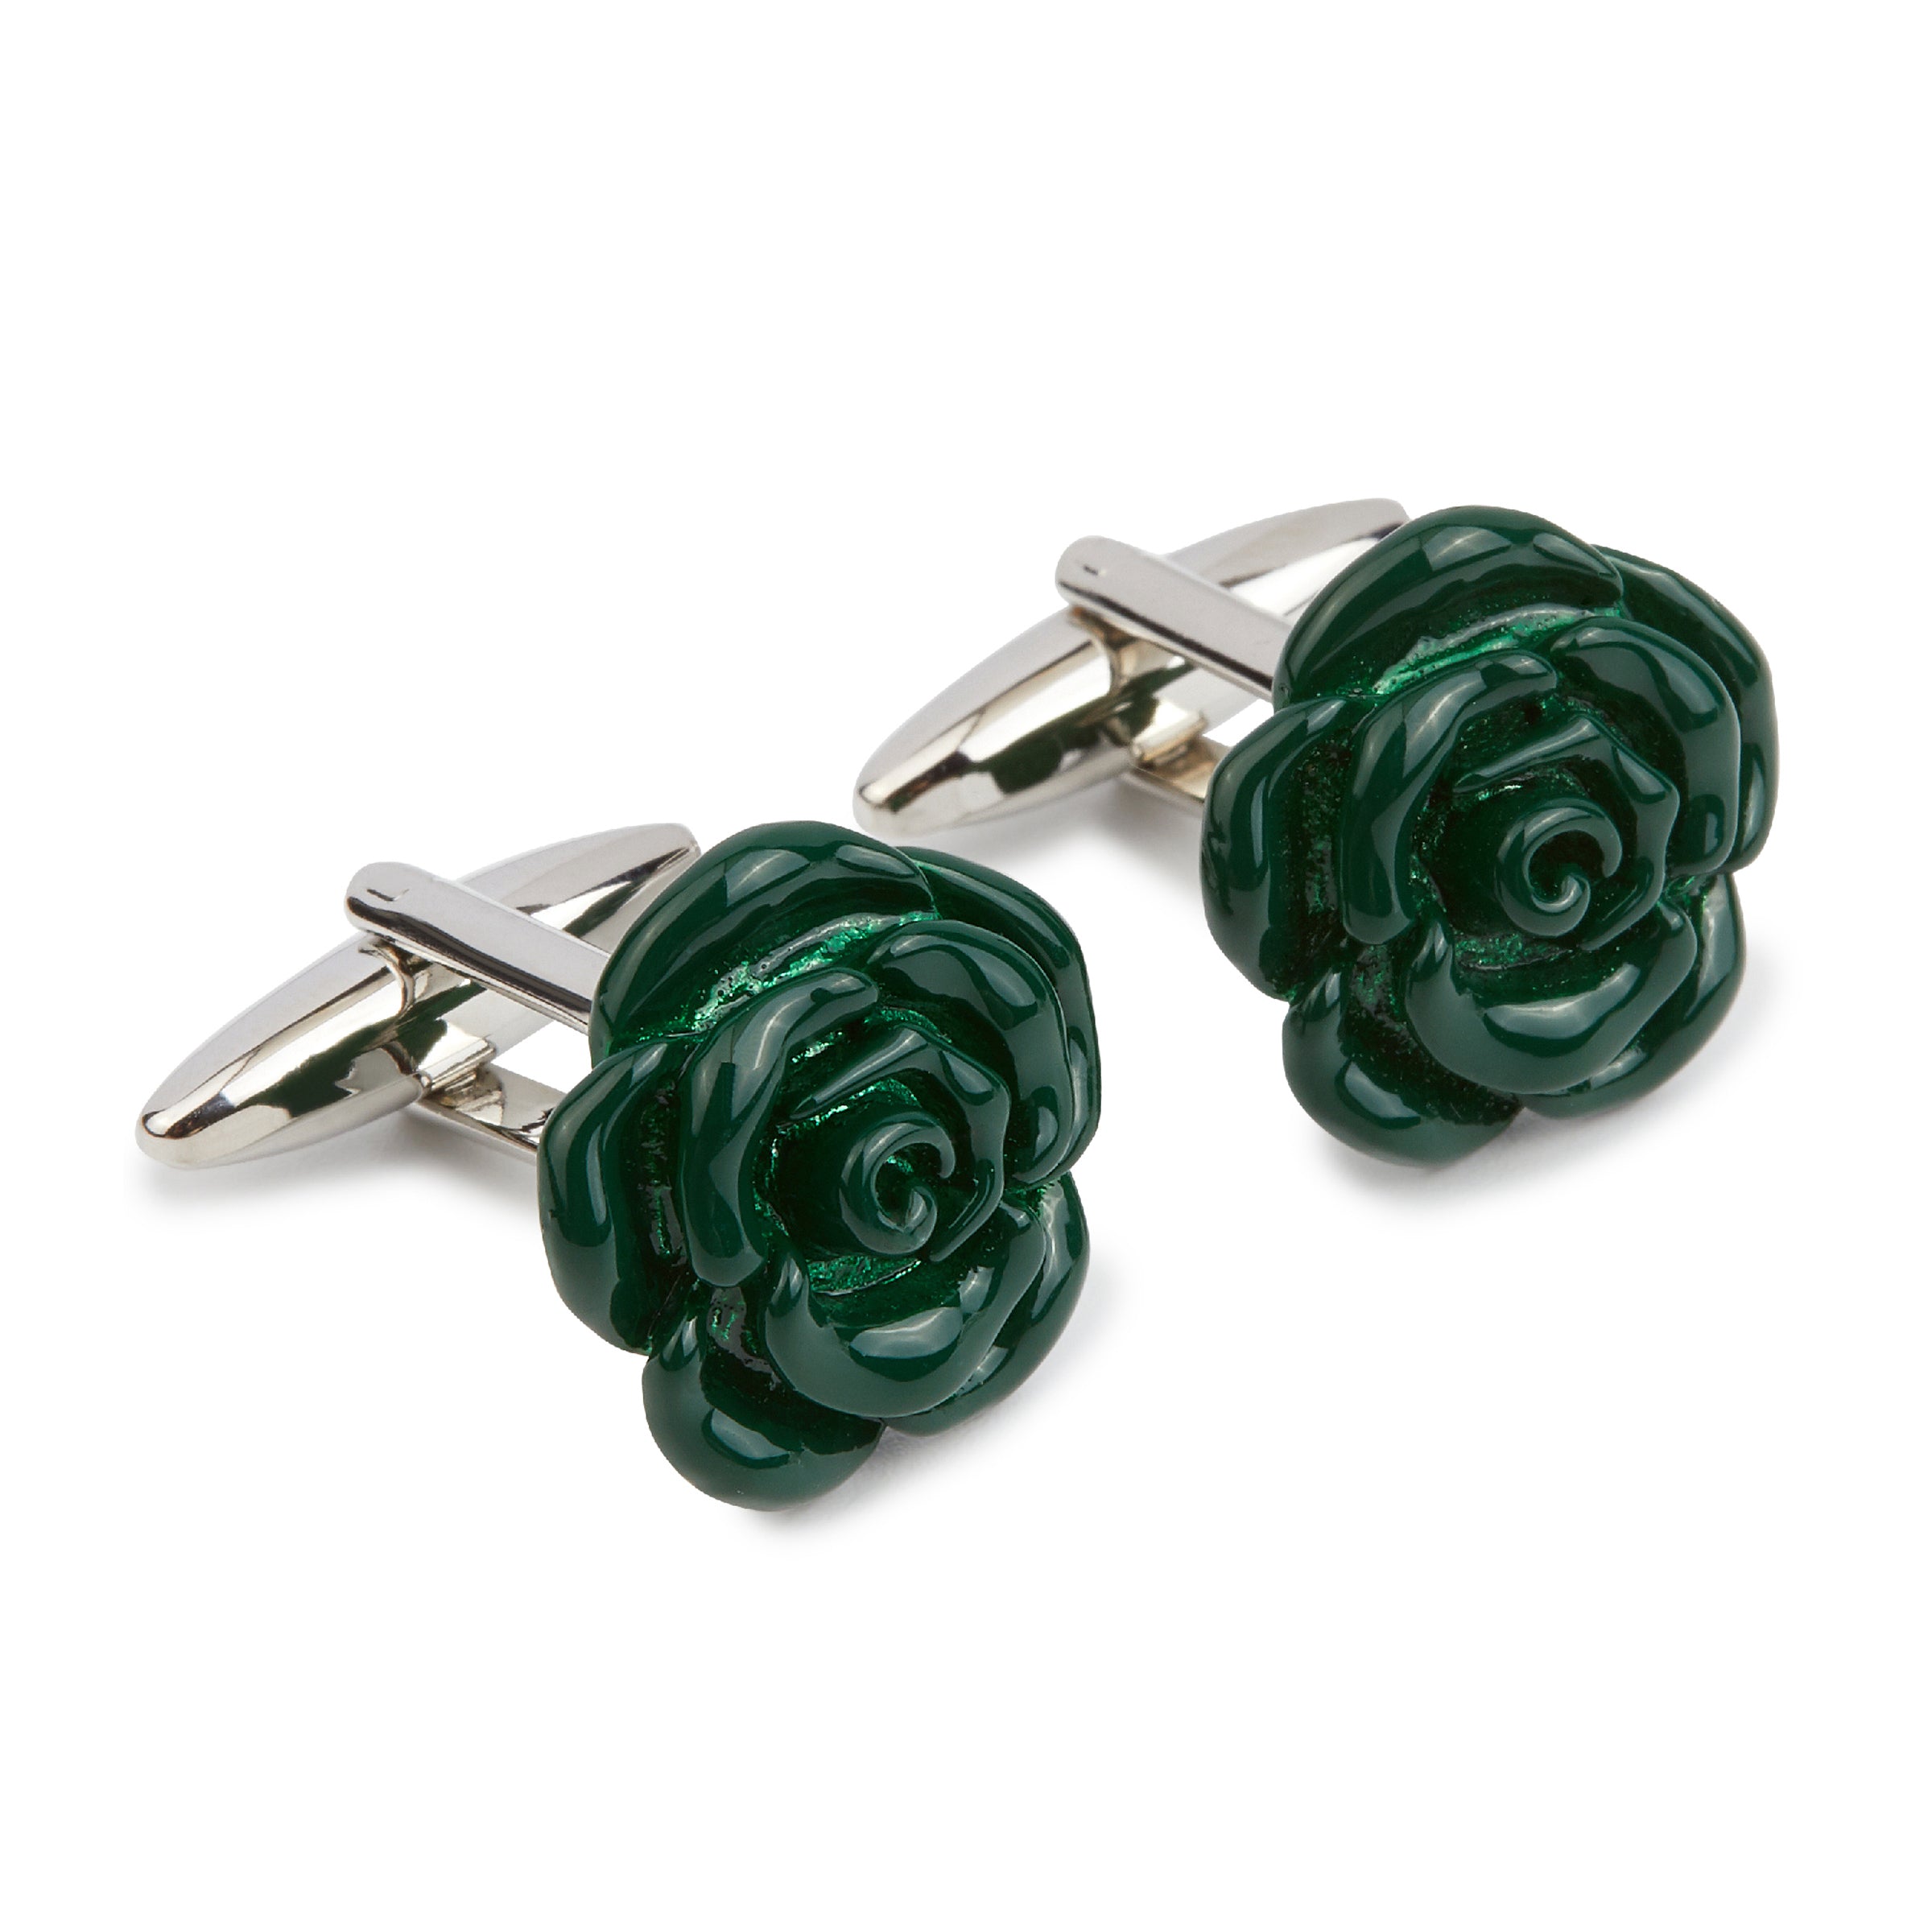 Emerald Green Rose Metal Cufflinks